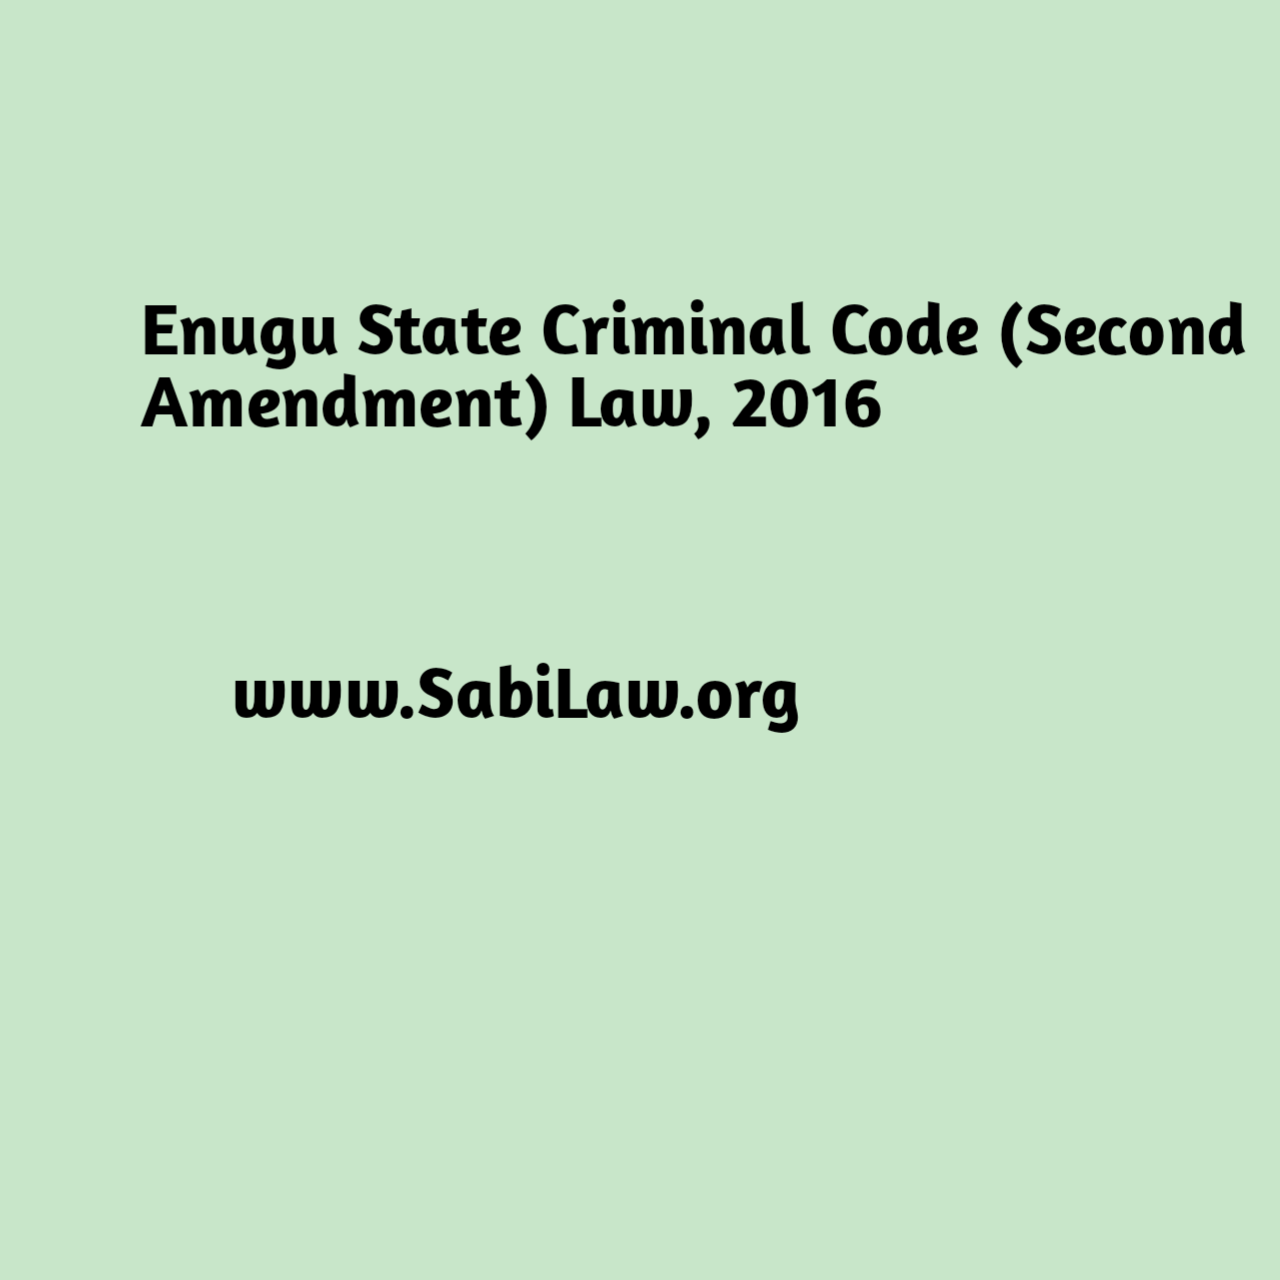 Enugu State Criminal Code (Second Amendment) Law, 2016